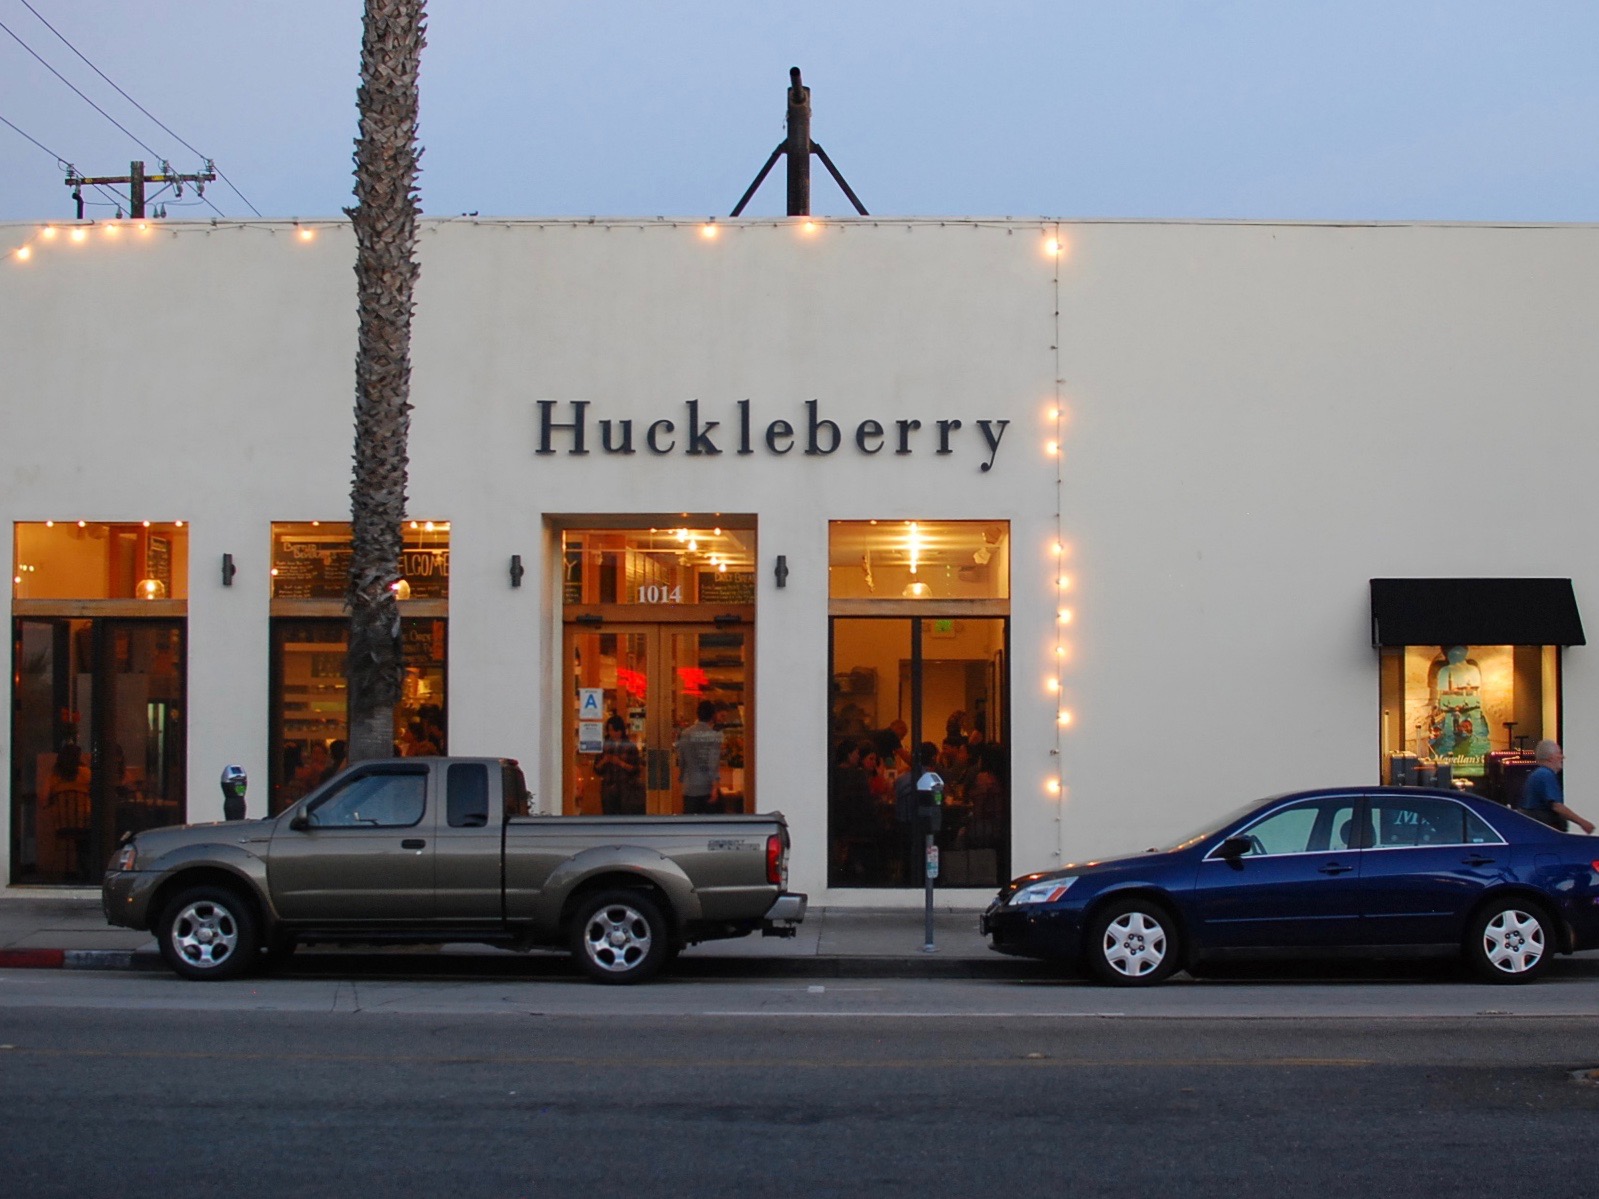 Huckleberry cafe